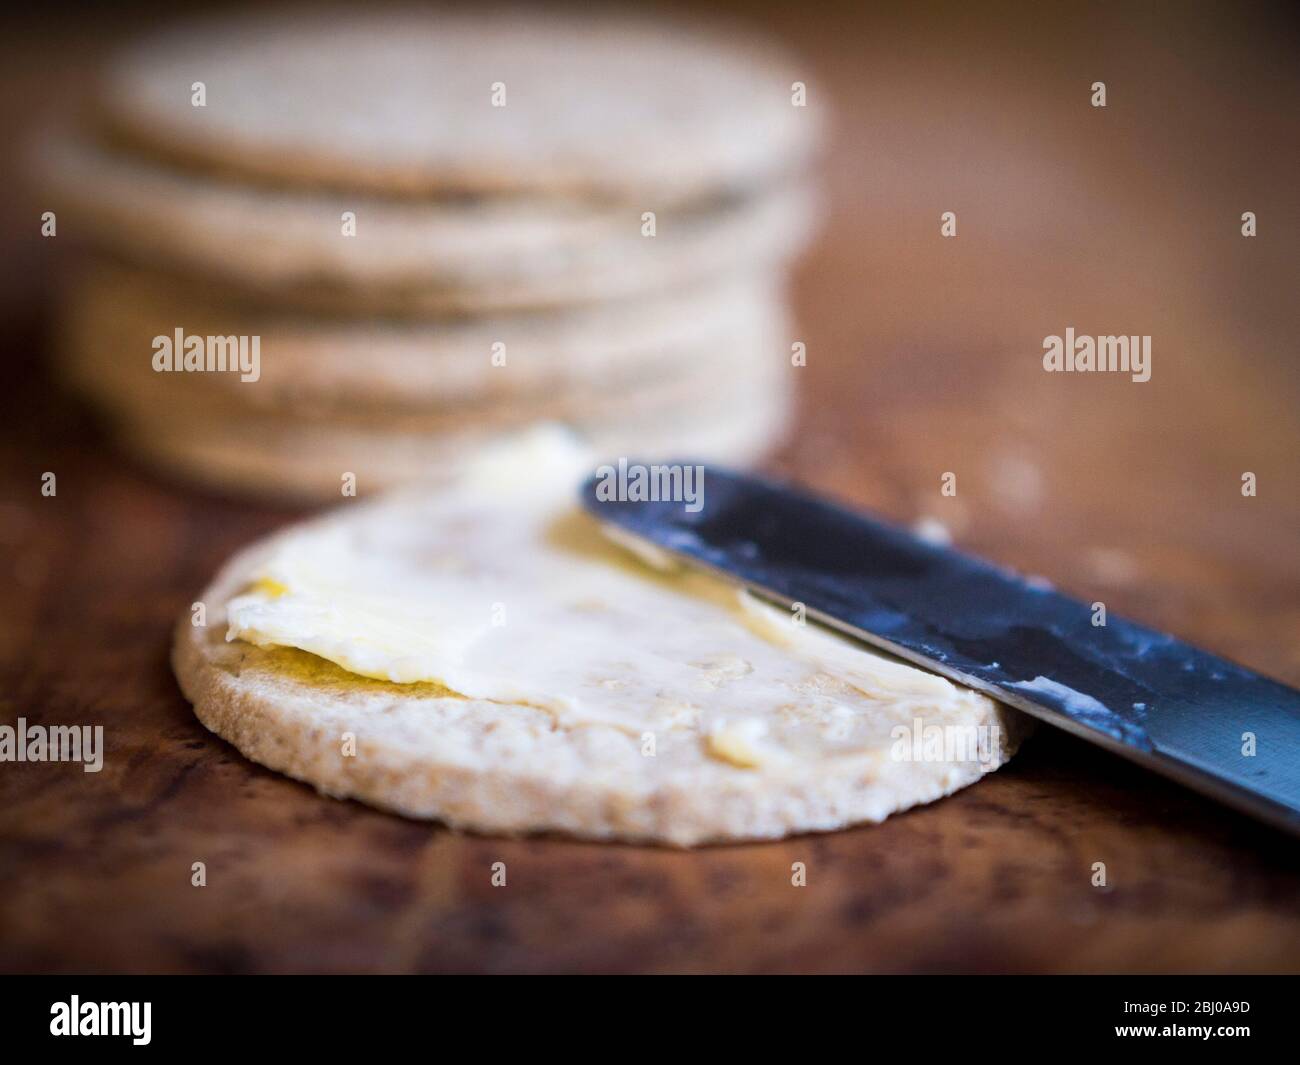 Los oatcakes de Nairn sin gluten se extienden con la mantequilla sin sal adecuada Foto de stock